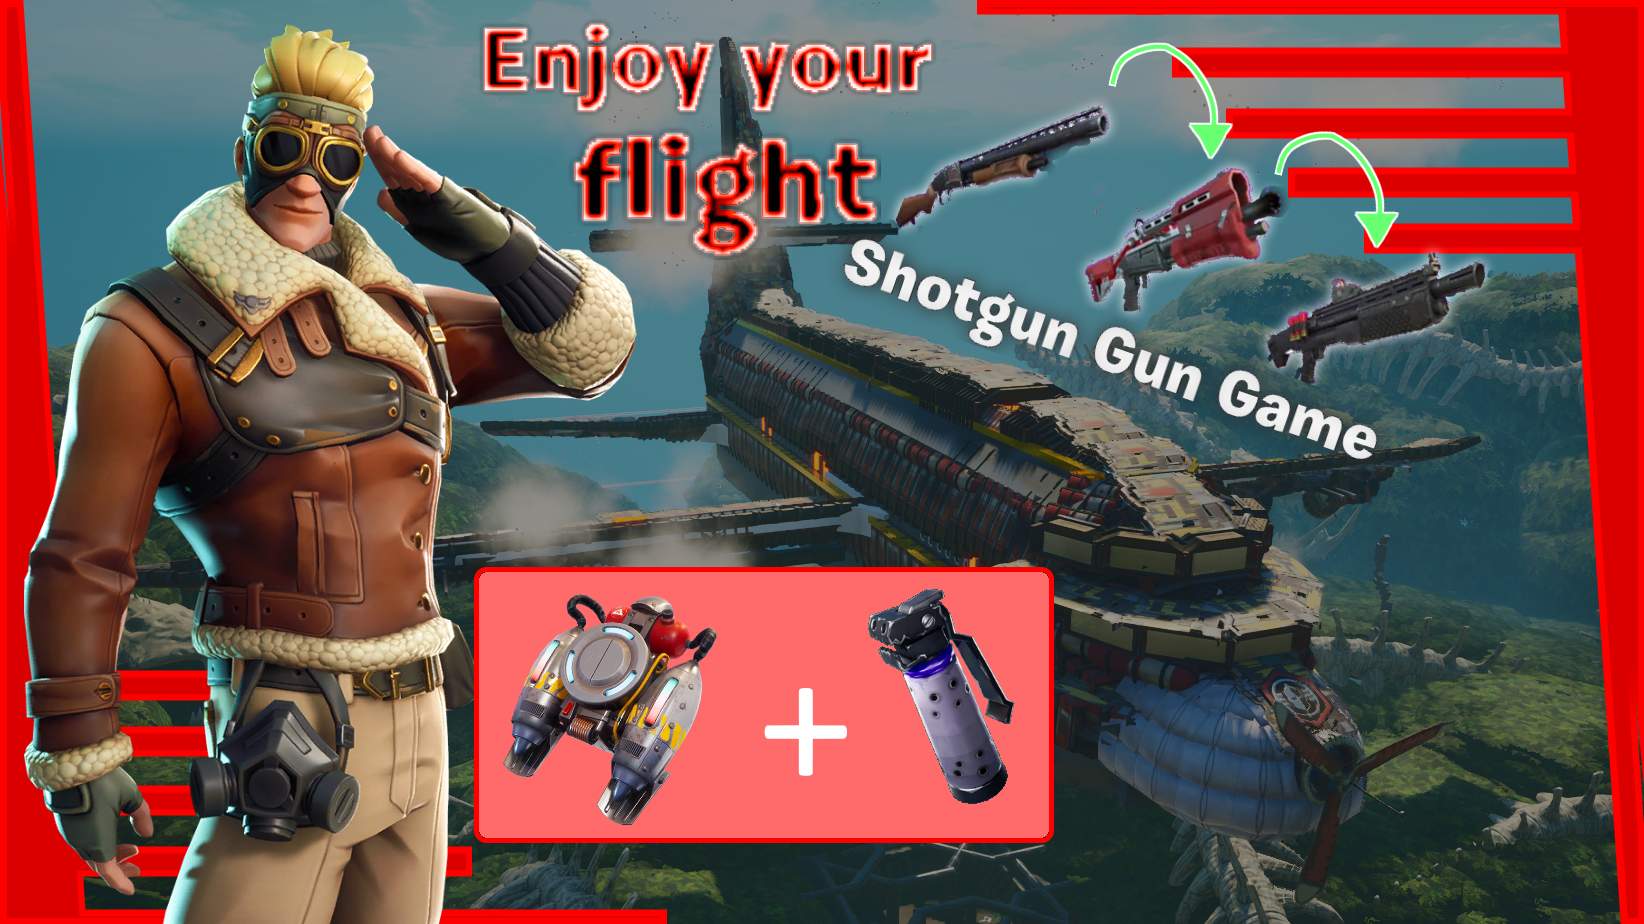 747: Shotgun Gun Game